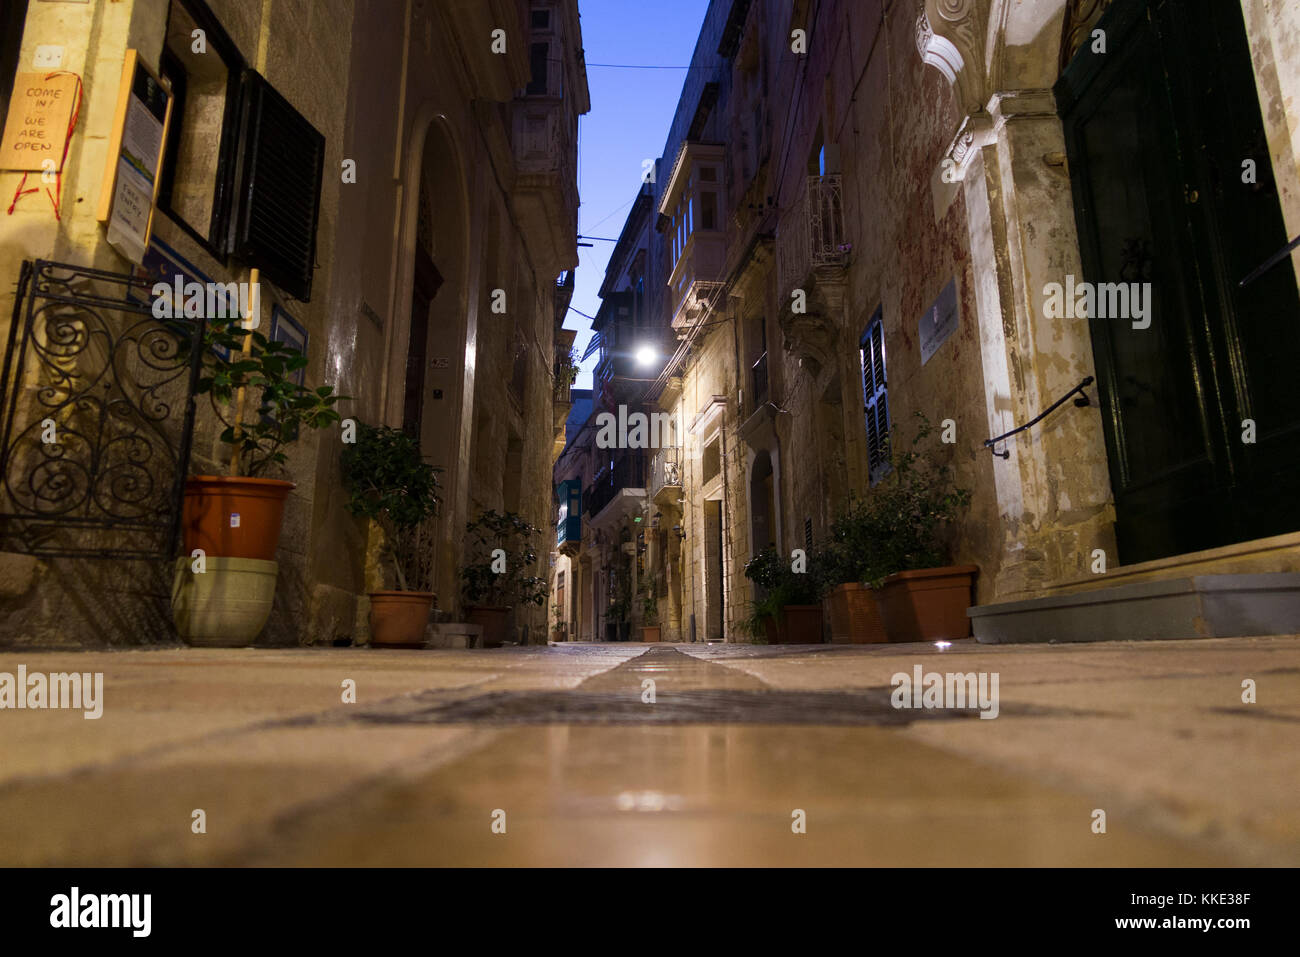 Die ruhigen Straßen und Wege von Portomaso, Malta, am frühen Abend/Nacht. Birgu ist auch durch seine Titel Città Vittoriosa bekannt. (91) Stockfoto